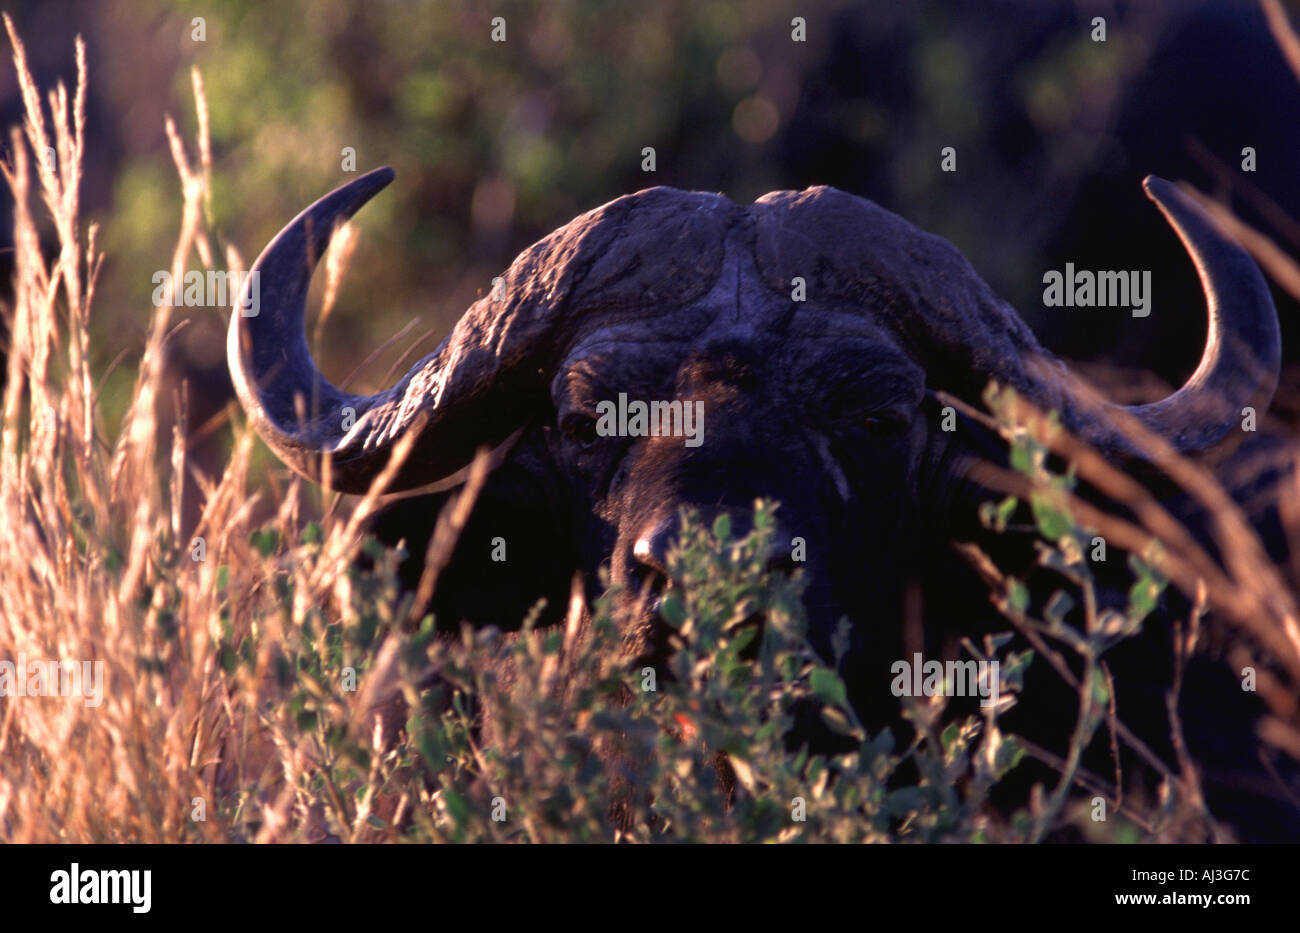 Bull in vegetation, Syncerus caffer Stock Photo